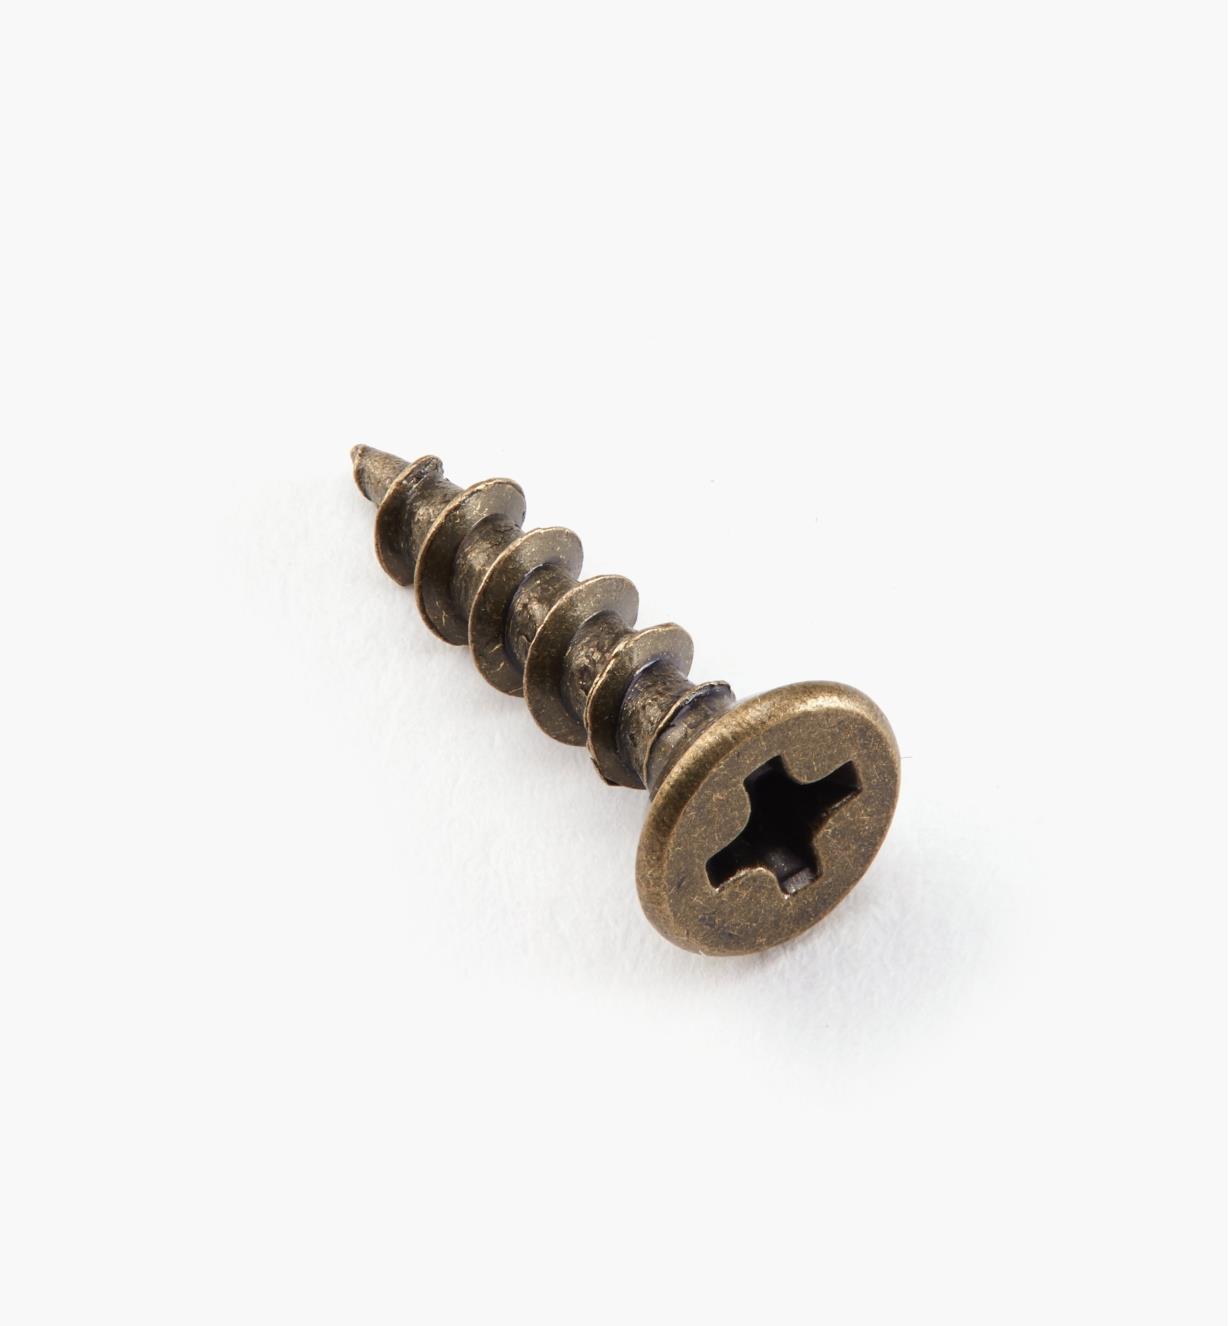 01Z6205 - #6 × 5/8" Antique Brass Hinge Screws, pkg of 100